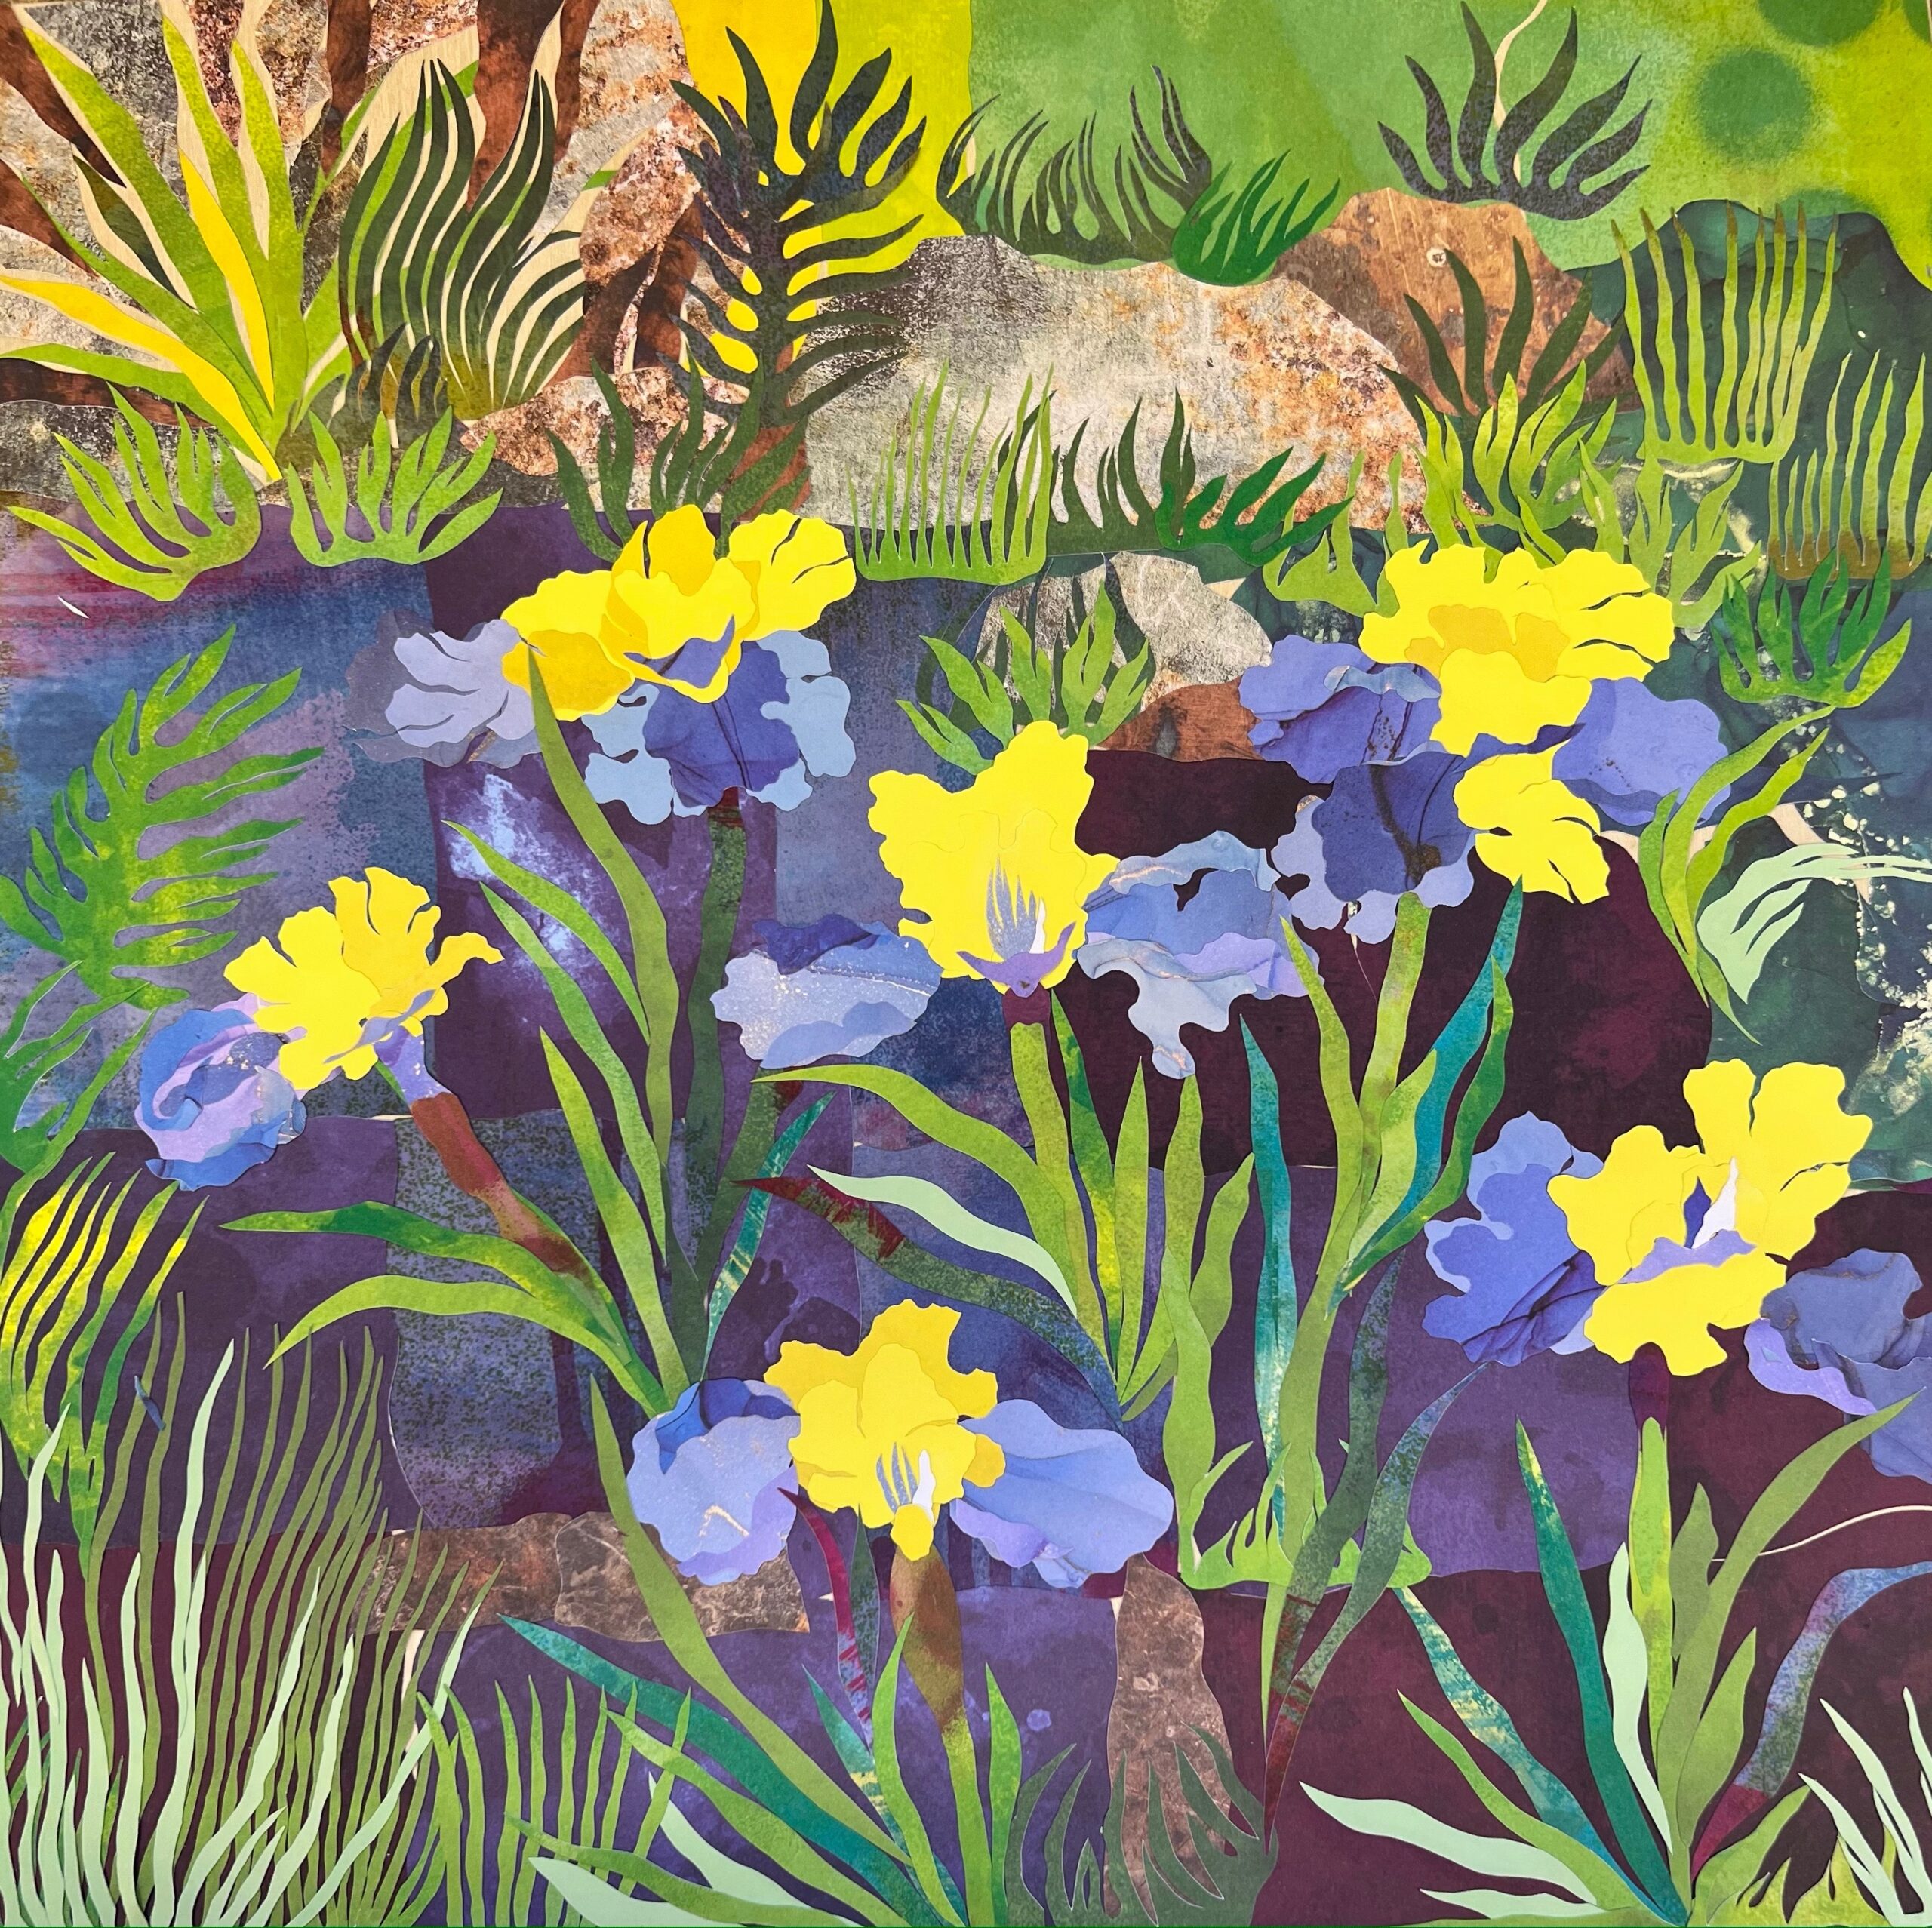 The Iris Garden